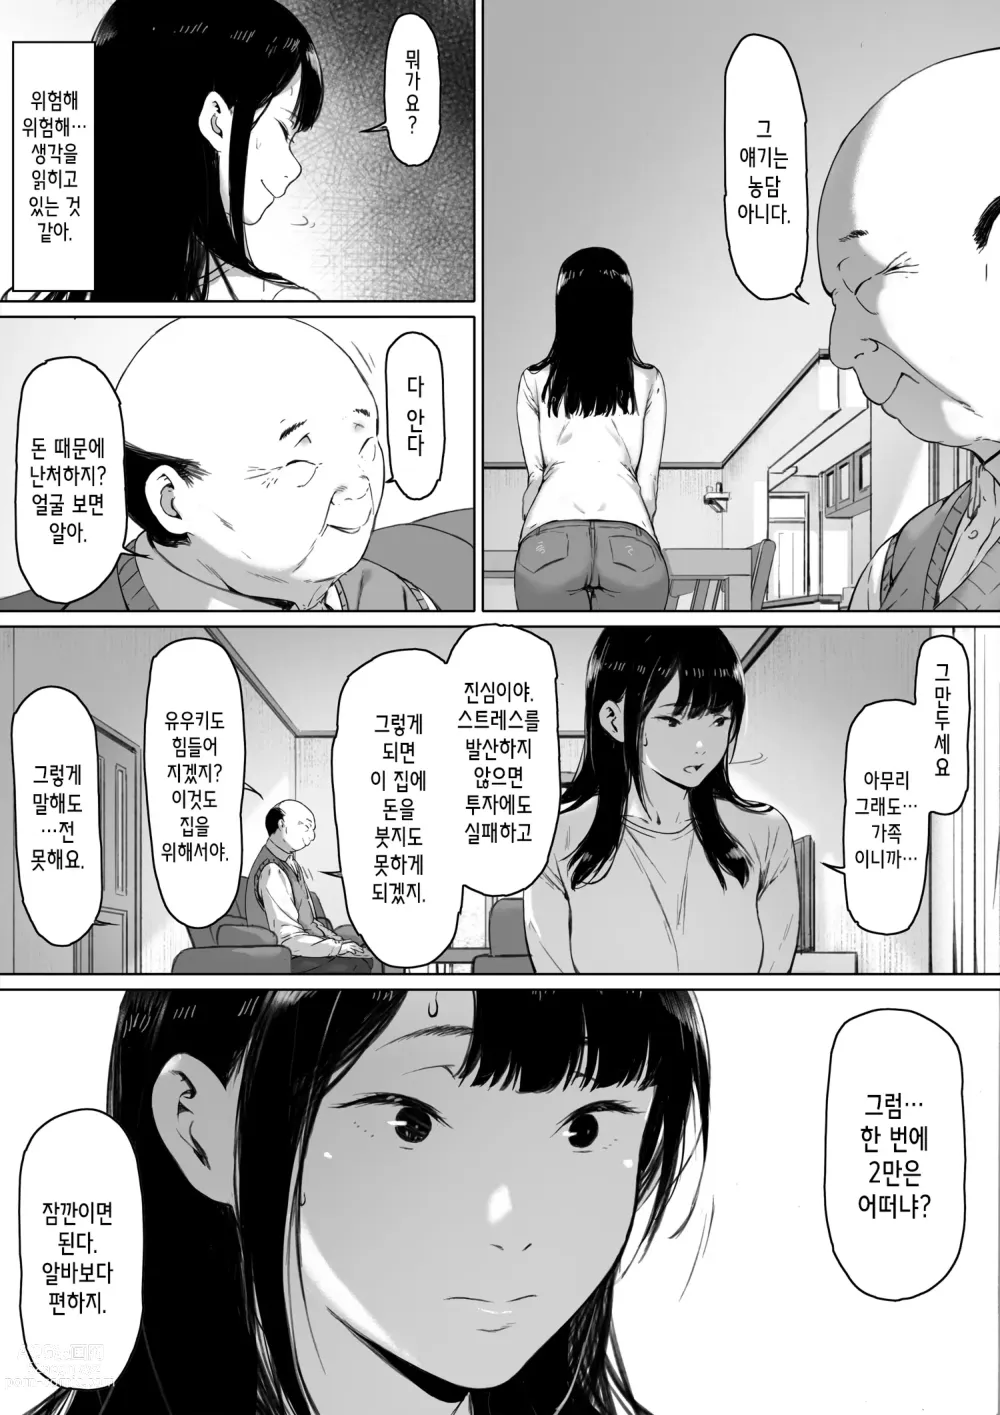 Page 21 of doujinshi 행복한 신혼생활을 보냈어야 했는데 시아버지와 동거하게 됐다 행복한 신혼생활을 보냈어야 했는데